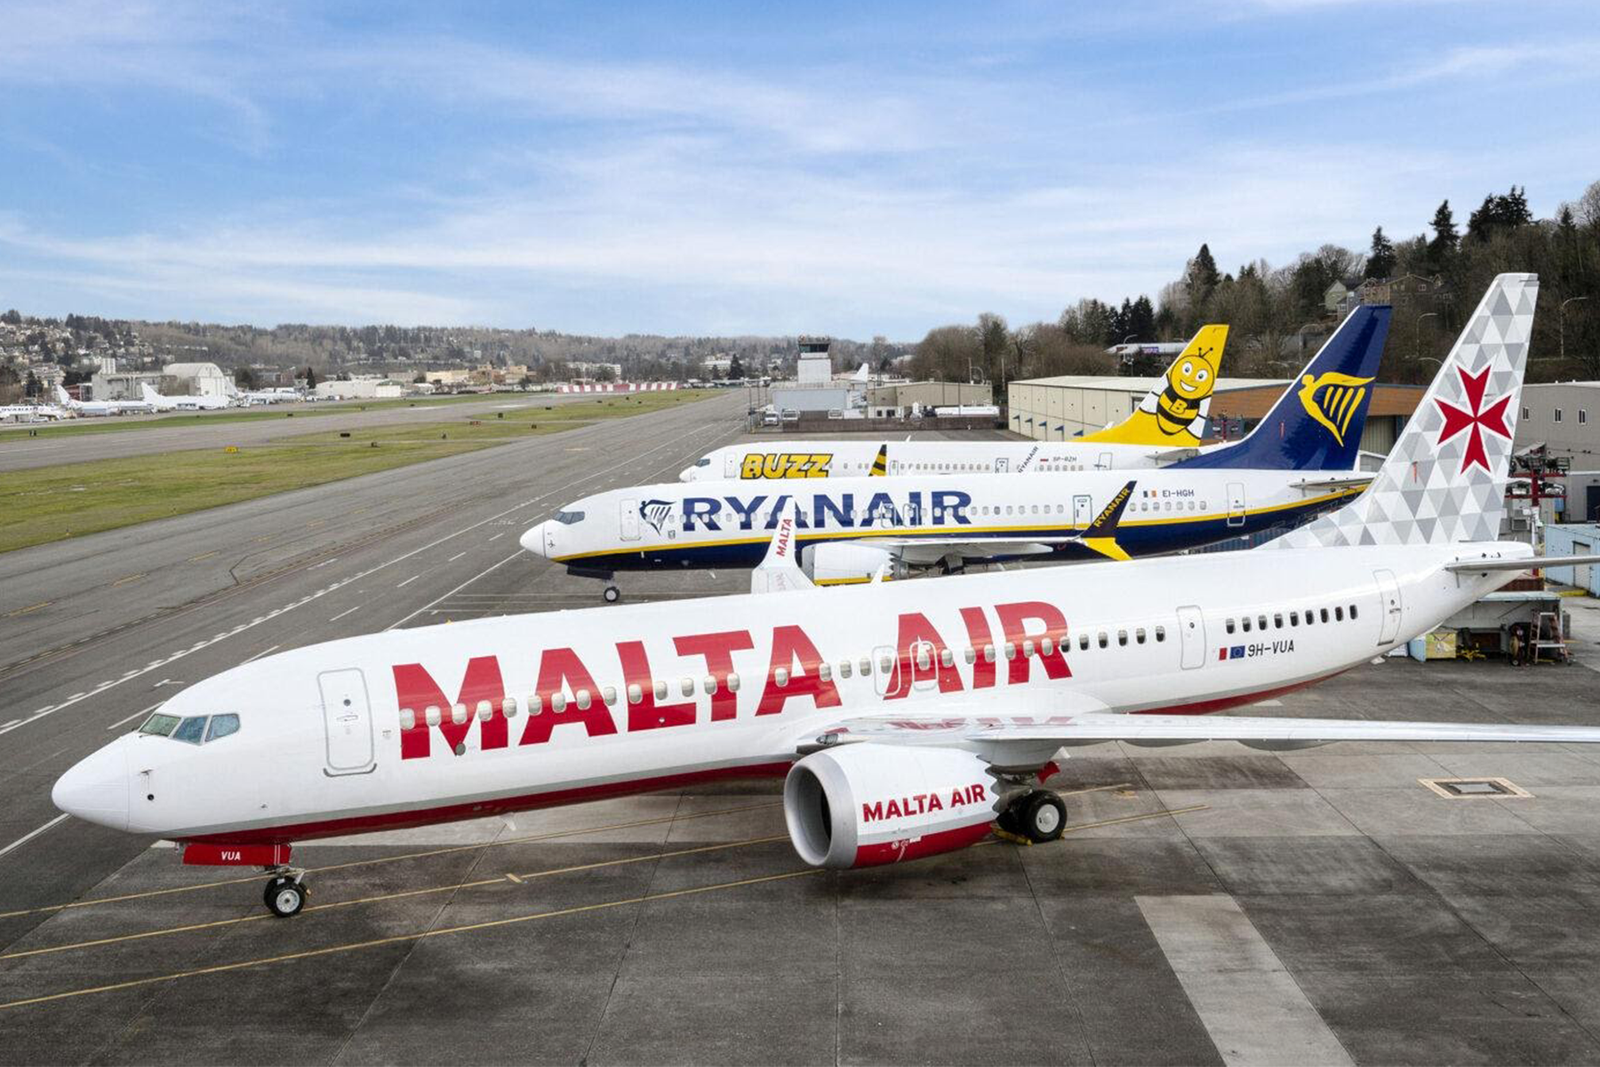 Las tres marcas del grupo que operan el 737: Malta Air, Ryanair y Buzz. Foto: Ryanair - Boeing